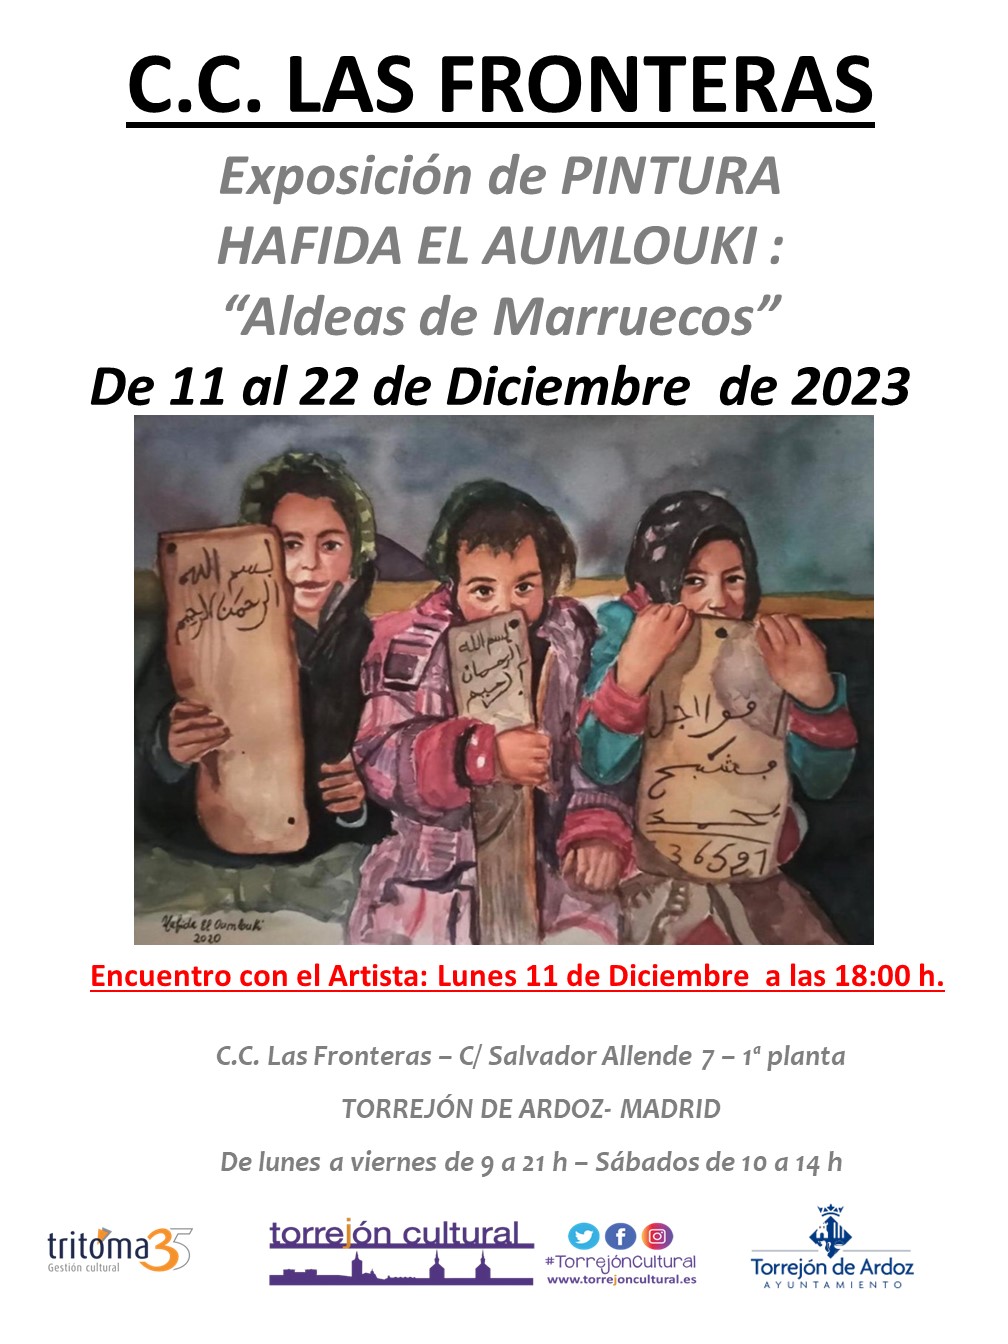 Exposición de pintura "Aldeas de Marruecos"